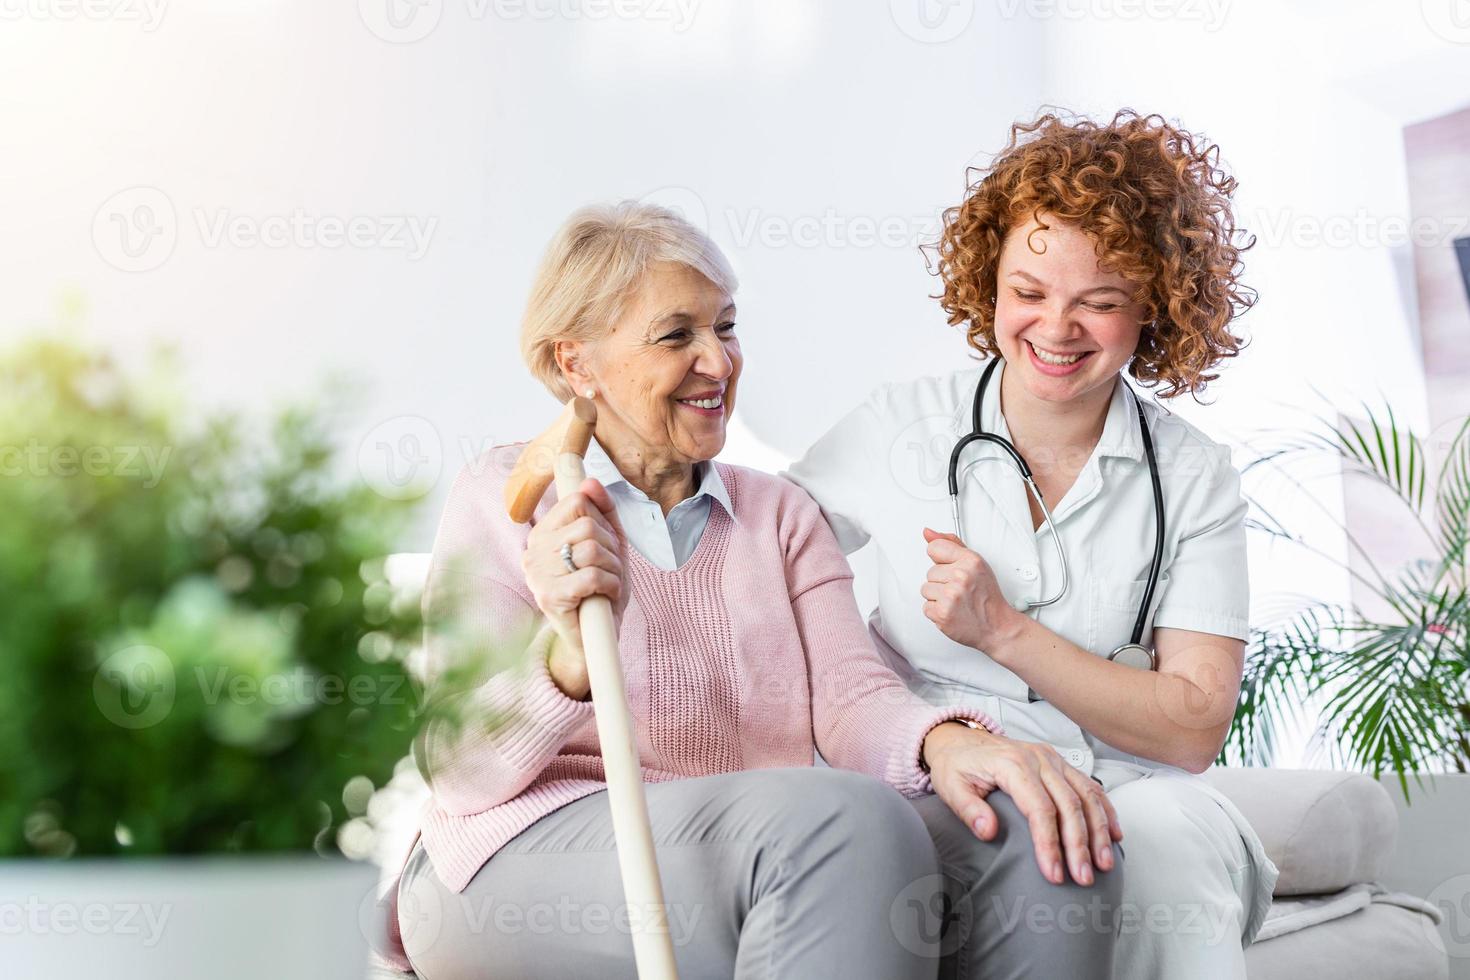 relação amigável entre sorridente cuidador de uniforme e mulher idosa feliz. jovem enfermeira de apoio olhando para mulher sênior. jovem cuidador adorável e ala feliz foto